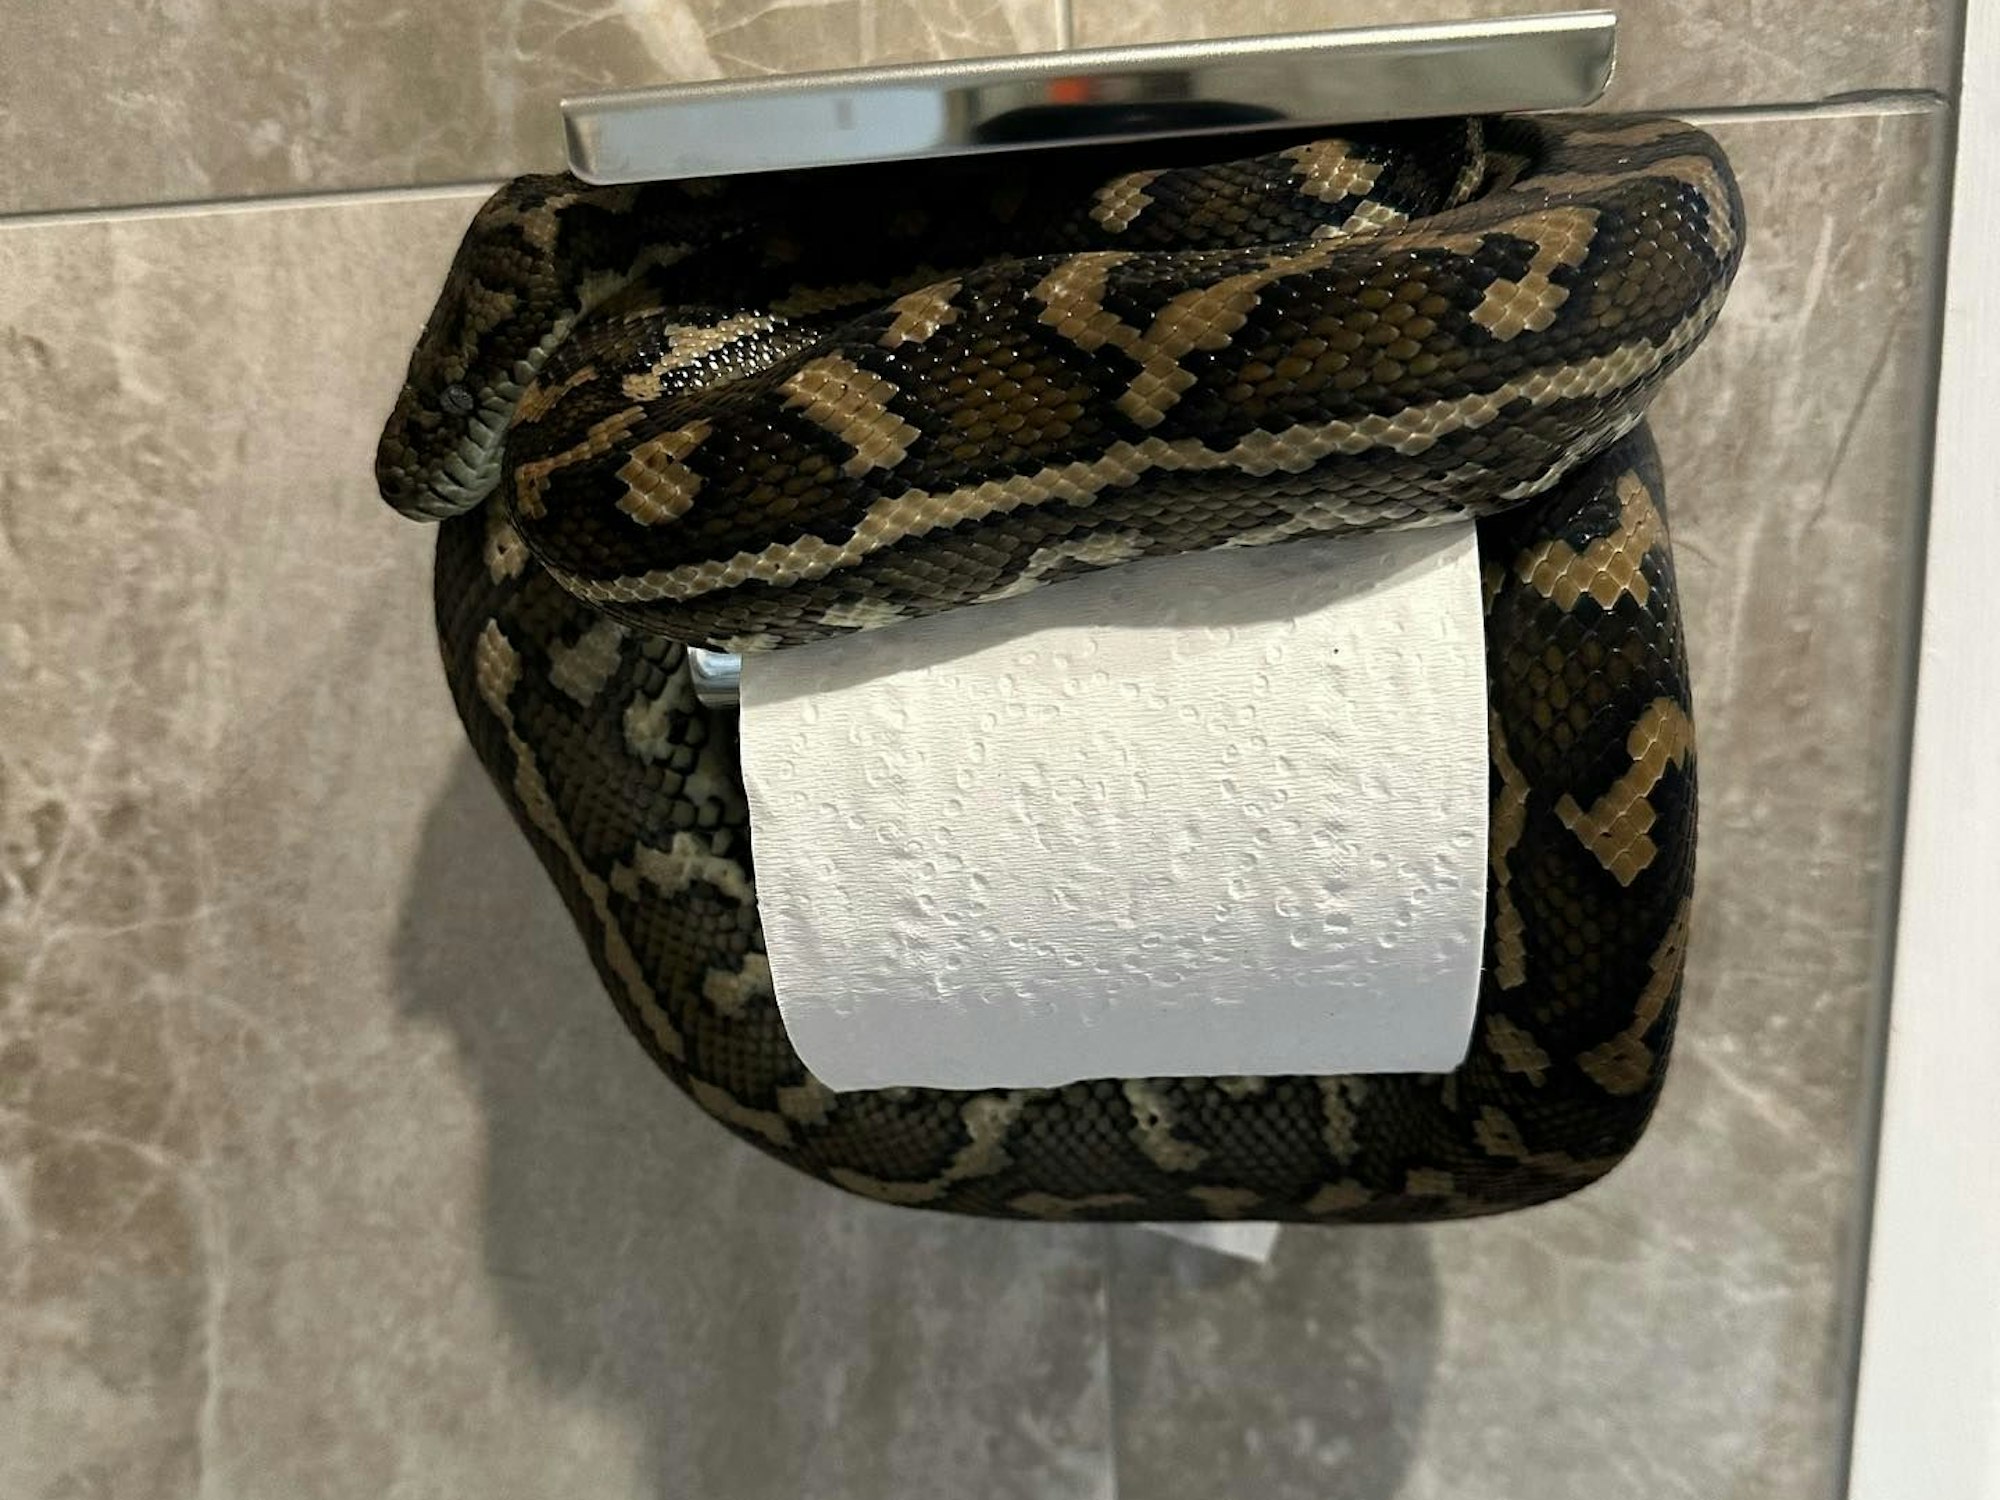 Eine Python hat in Australien im Bad einen Ort zum Entspannen gefunden – und schockte die Hausbesitzerin.